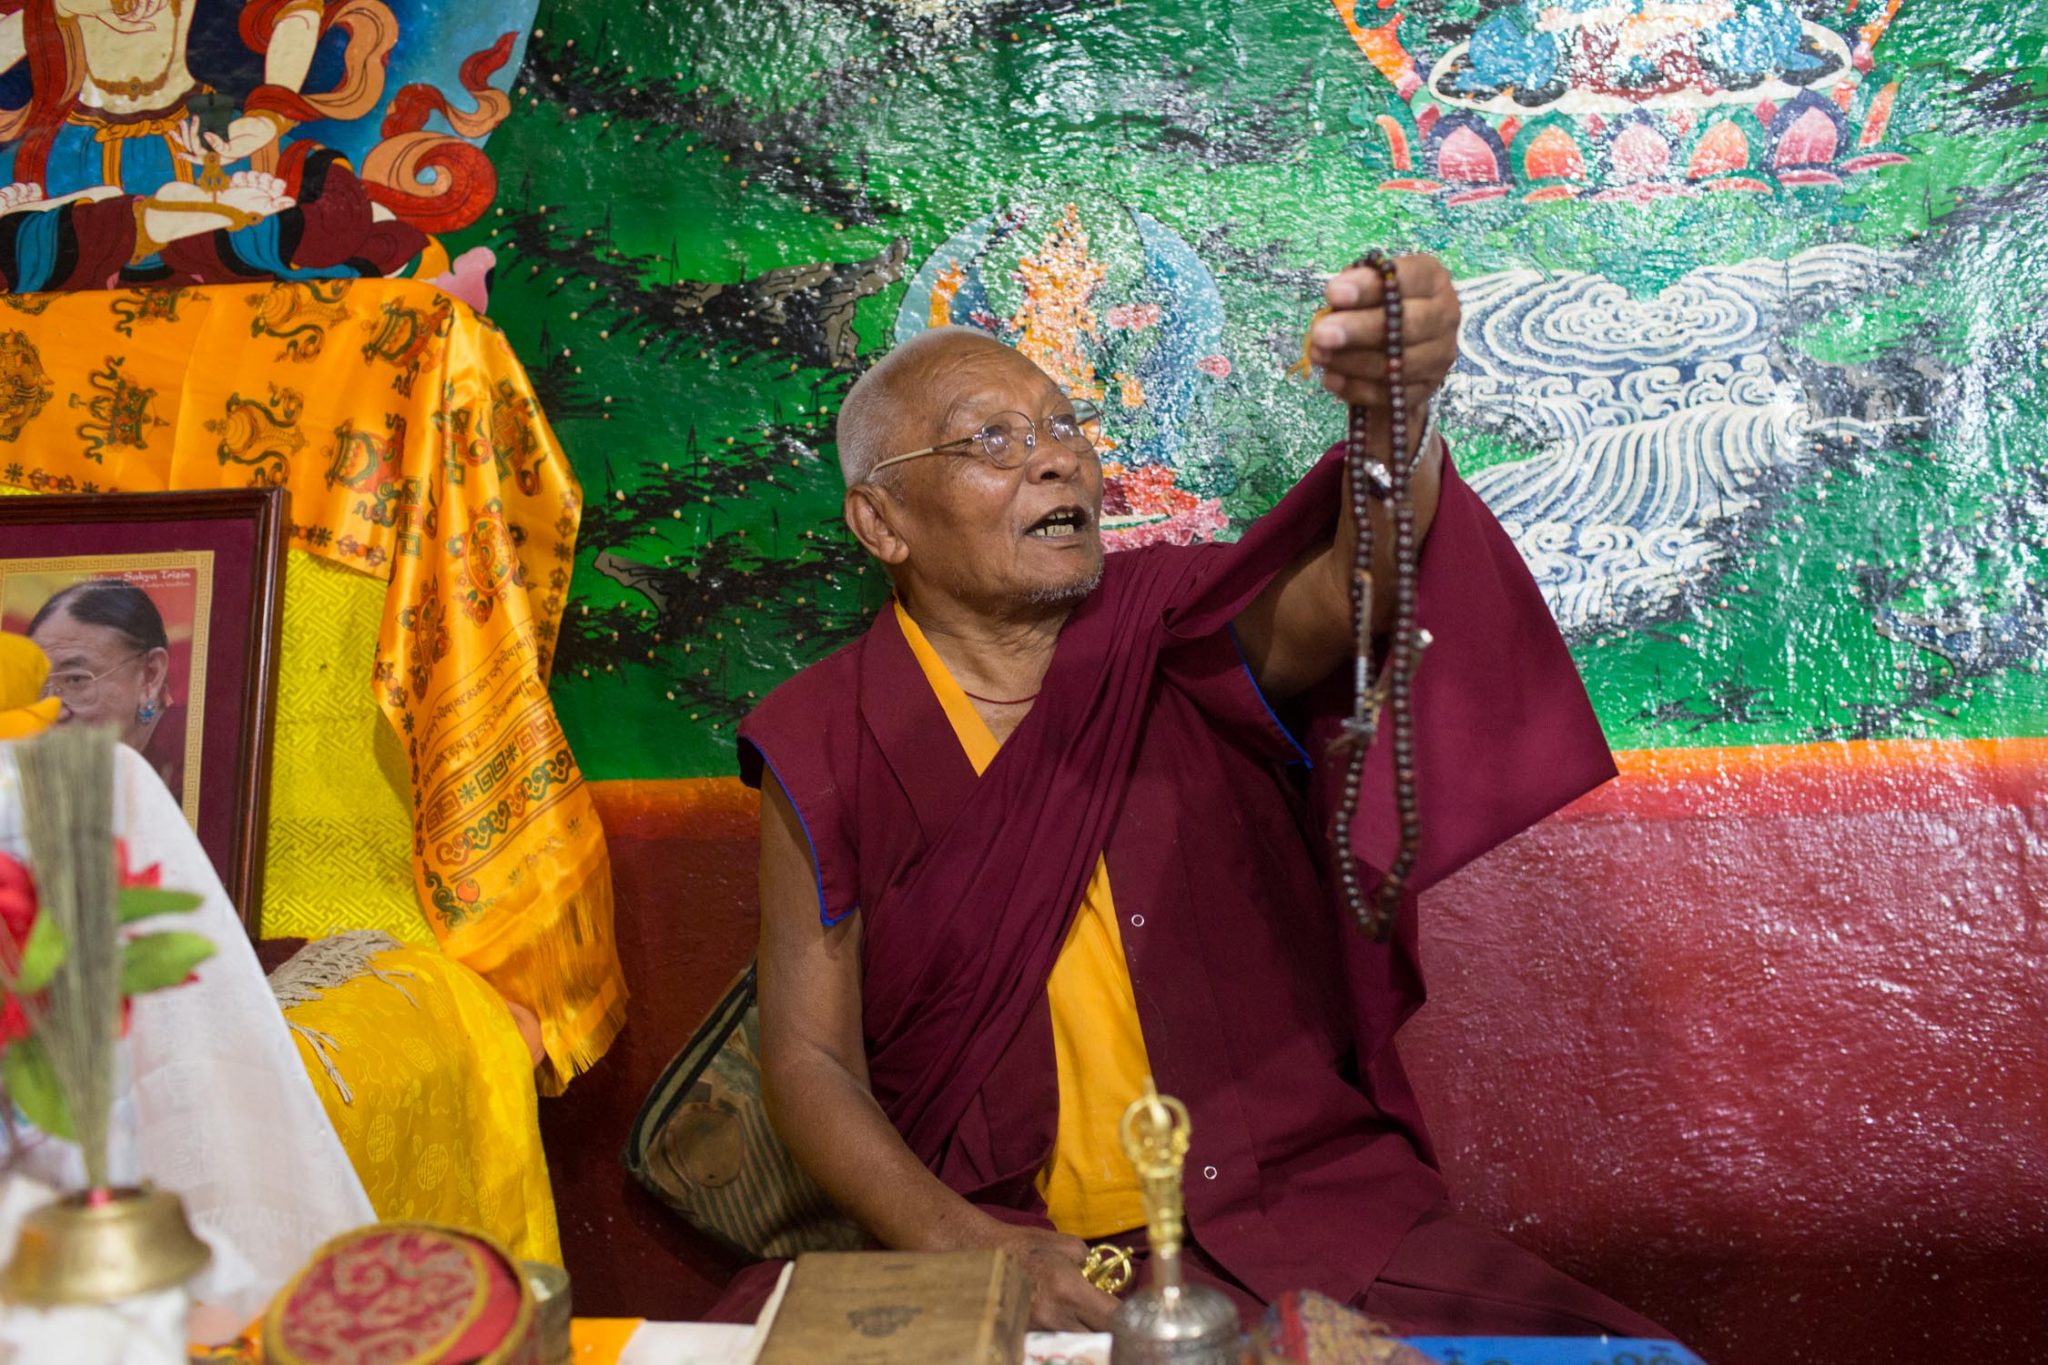 Guru Kunga Dupshang Lama of Awalokeshower Monastery explains the importance of the prayer beads in Buddhism.